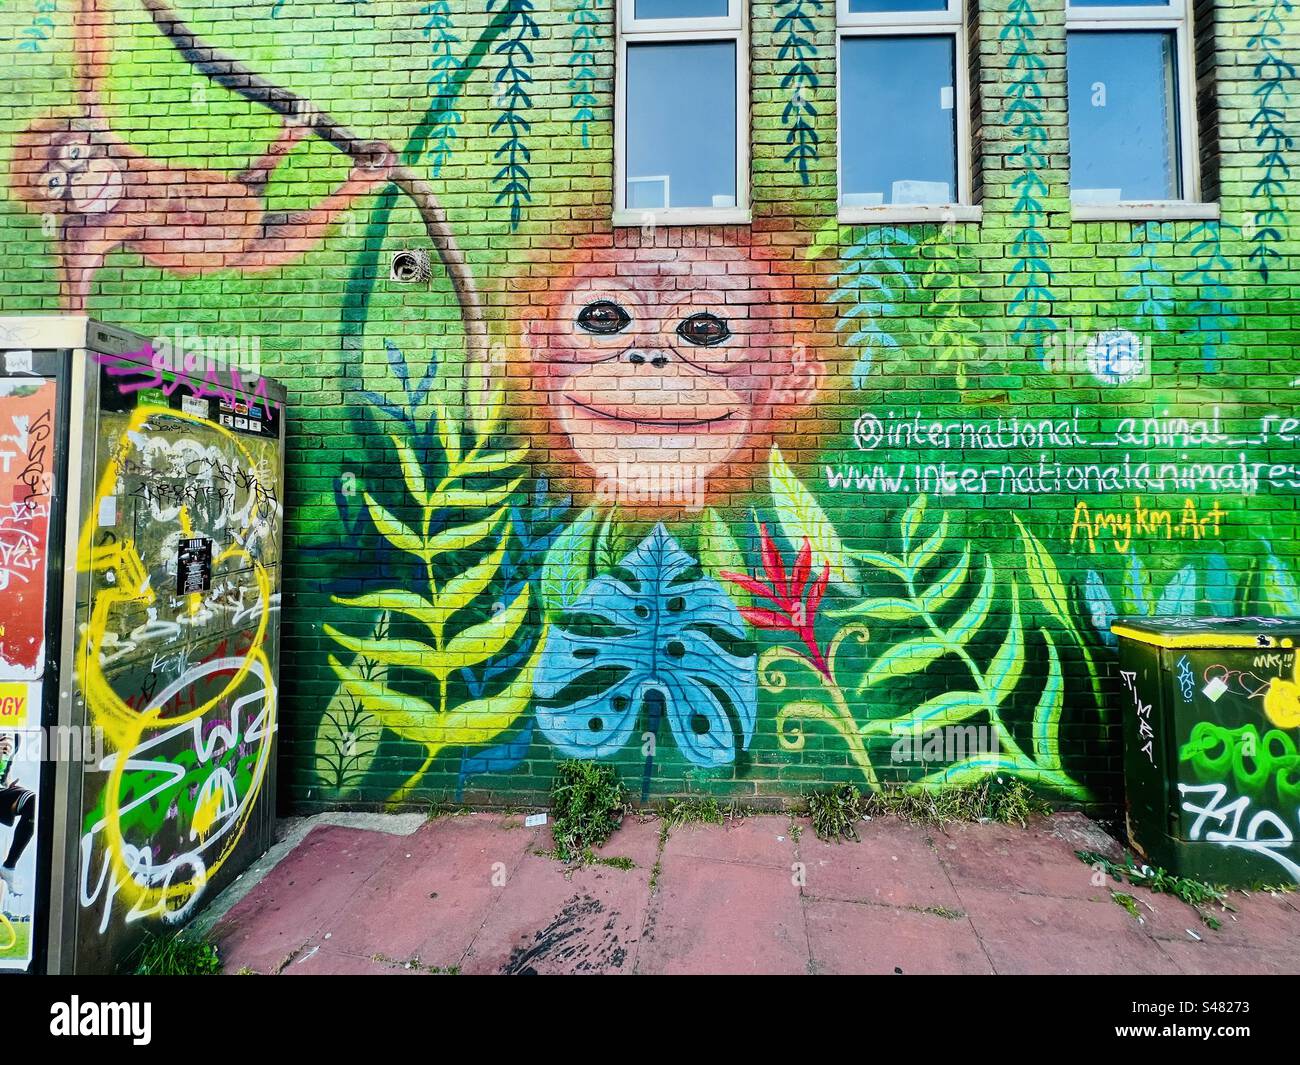 Art de rue mural de singe et jungle peint sur le mur d'un bâtiment à Brighton, East Sussex, Angleterre, Royaume-Uni. Banque D'Images